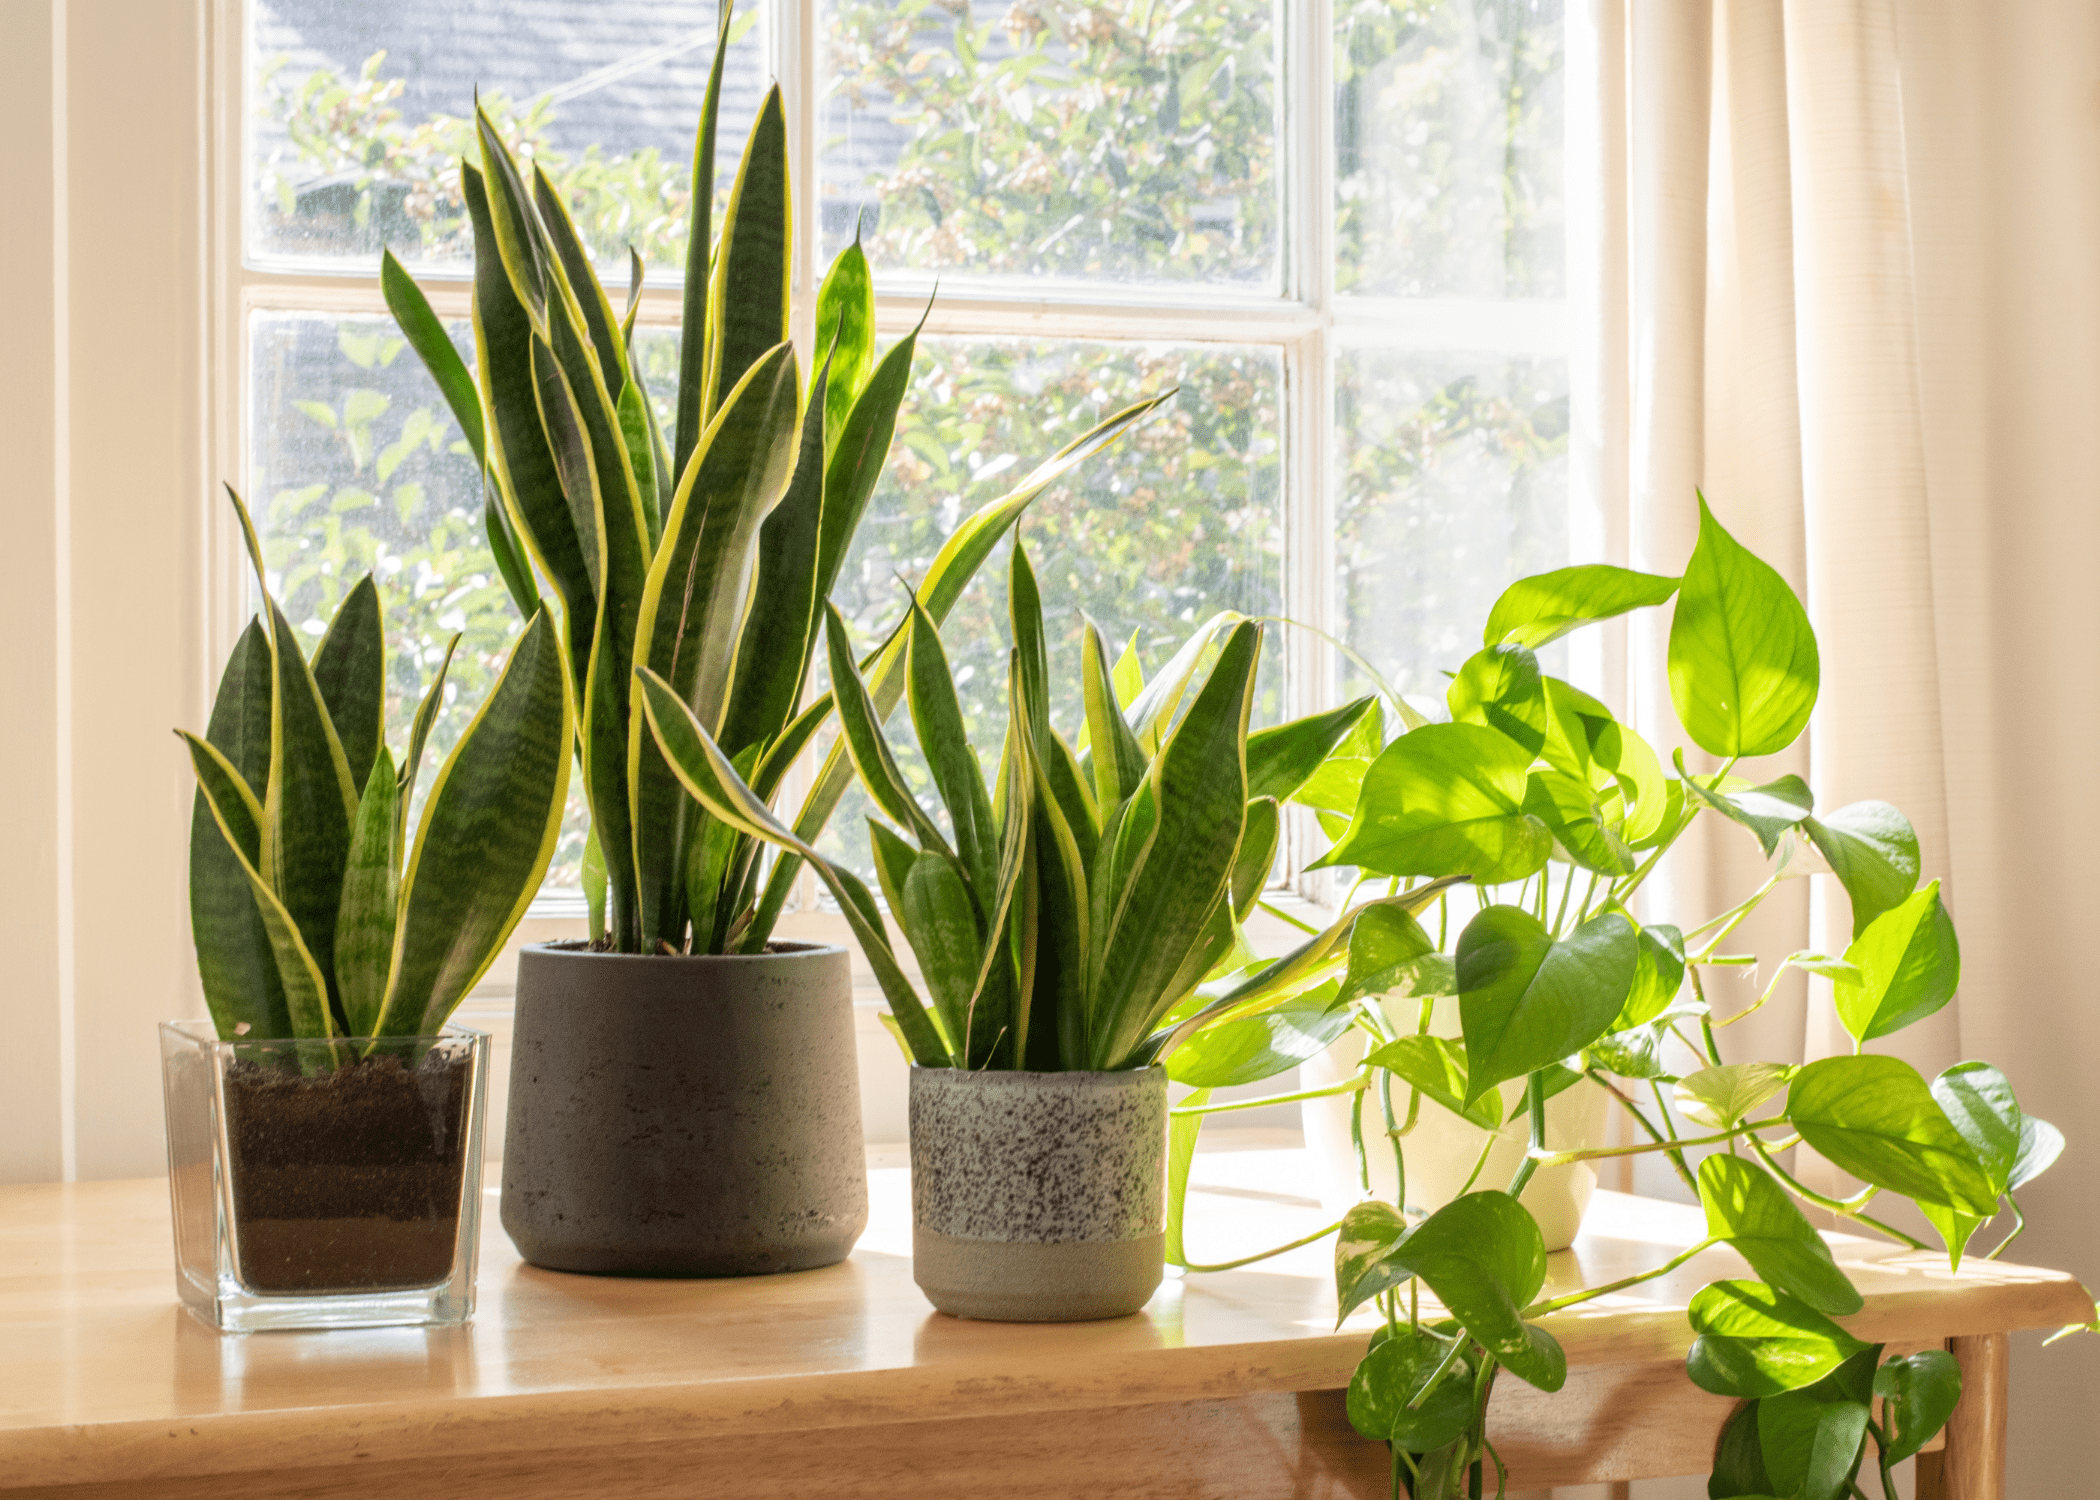 snake plants in pots on window sil